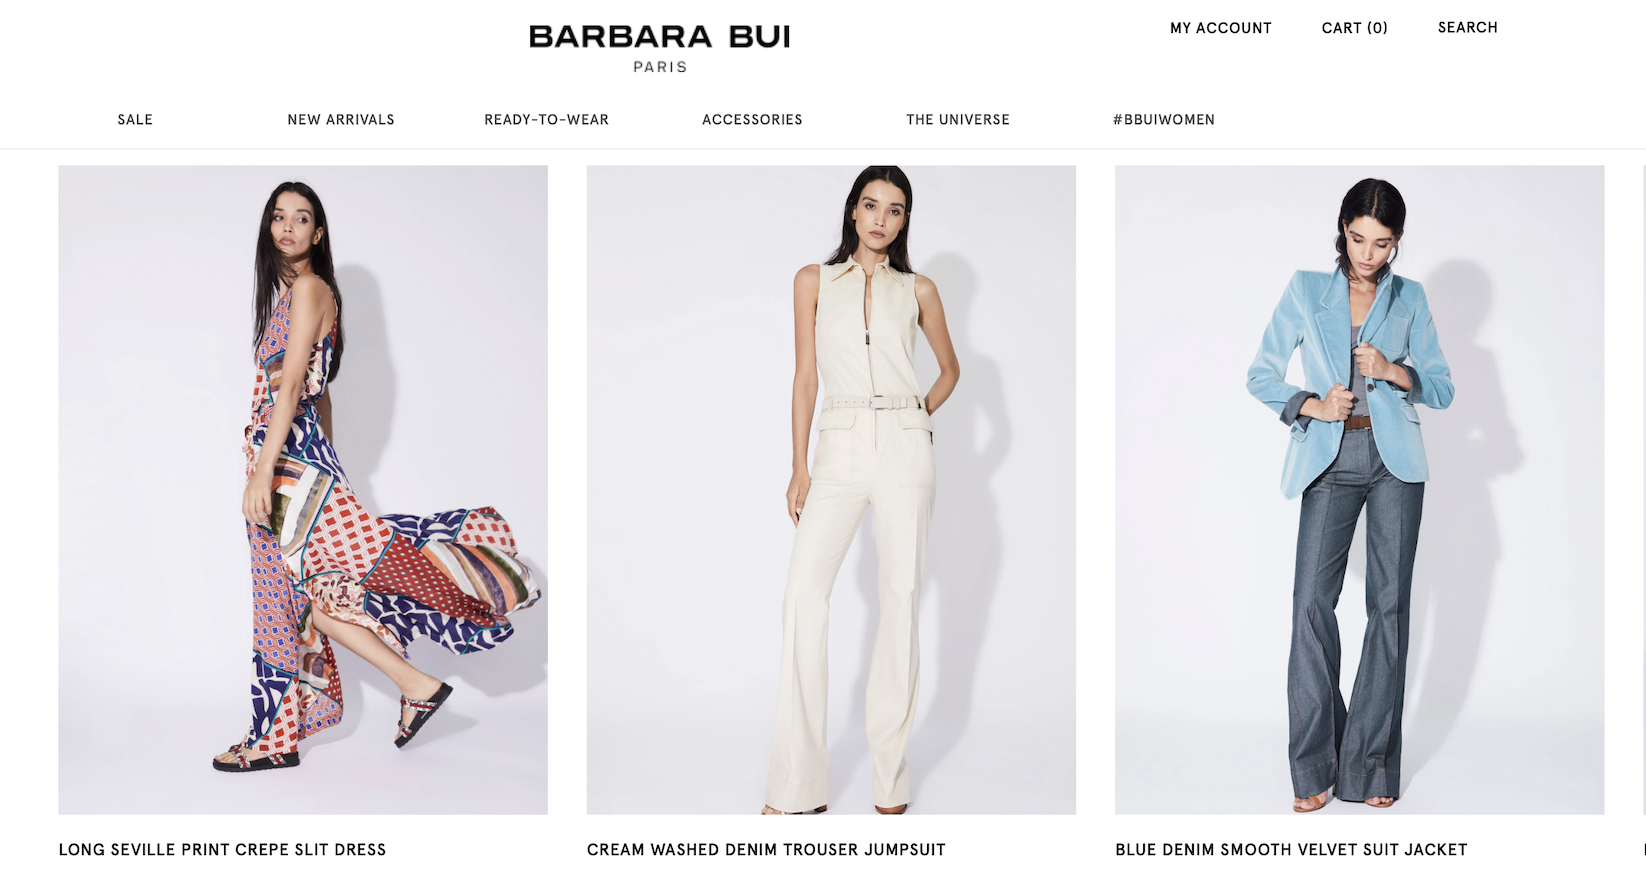 法国女装品牌 Barbara Bui 启动破产管理程序，为“复兴”争取时间和资源